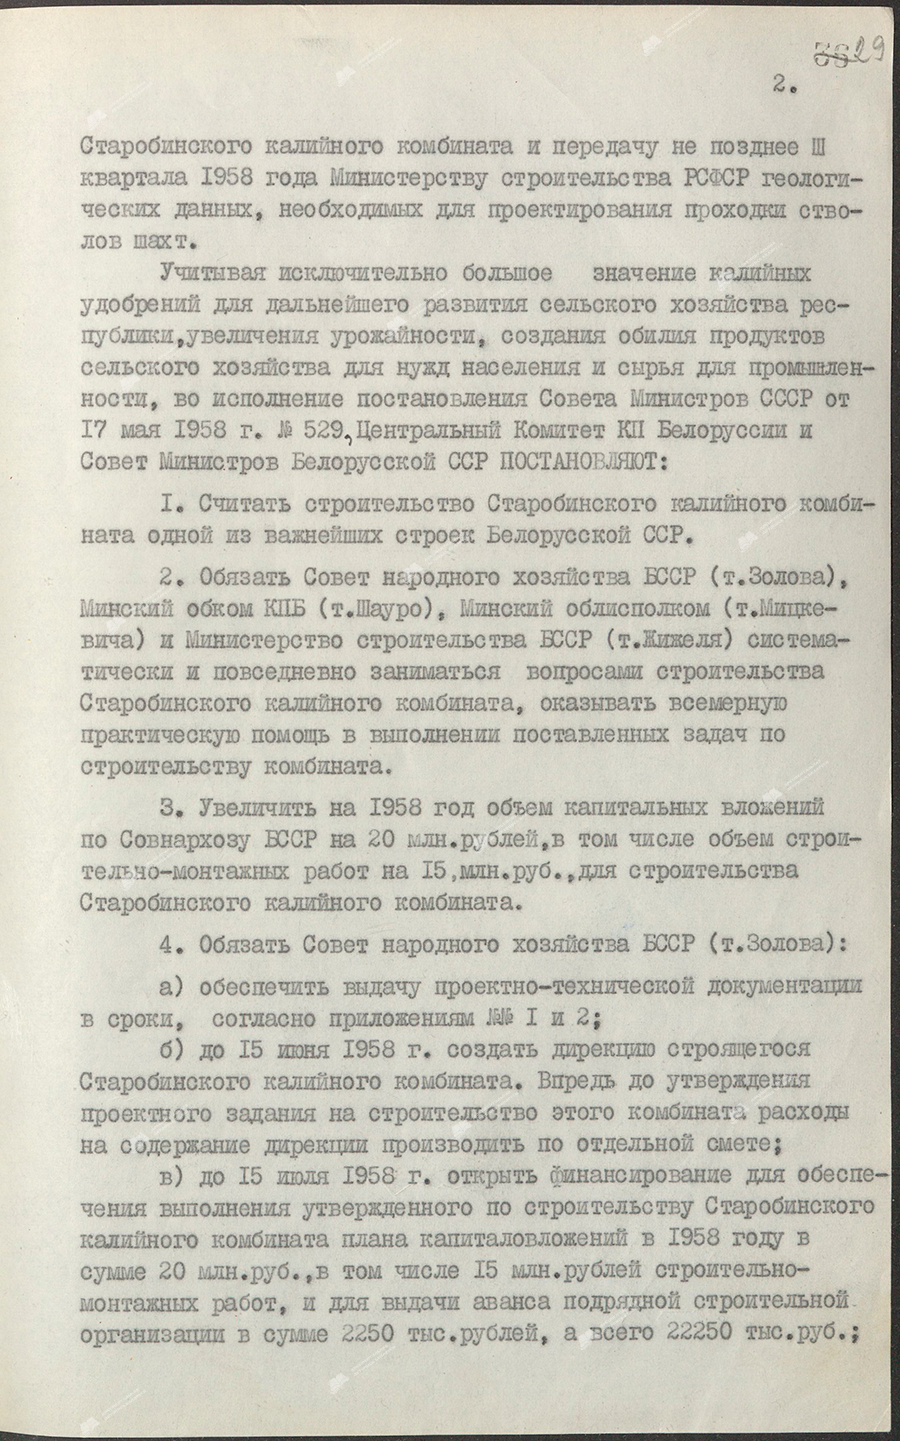 Beschluss Nr. 368 des Zentralkomitees des KP von Belarus und des Ministerrats der BSSR «Über den Bau des Kalikombinats Starobinsky»-с. 1